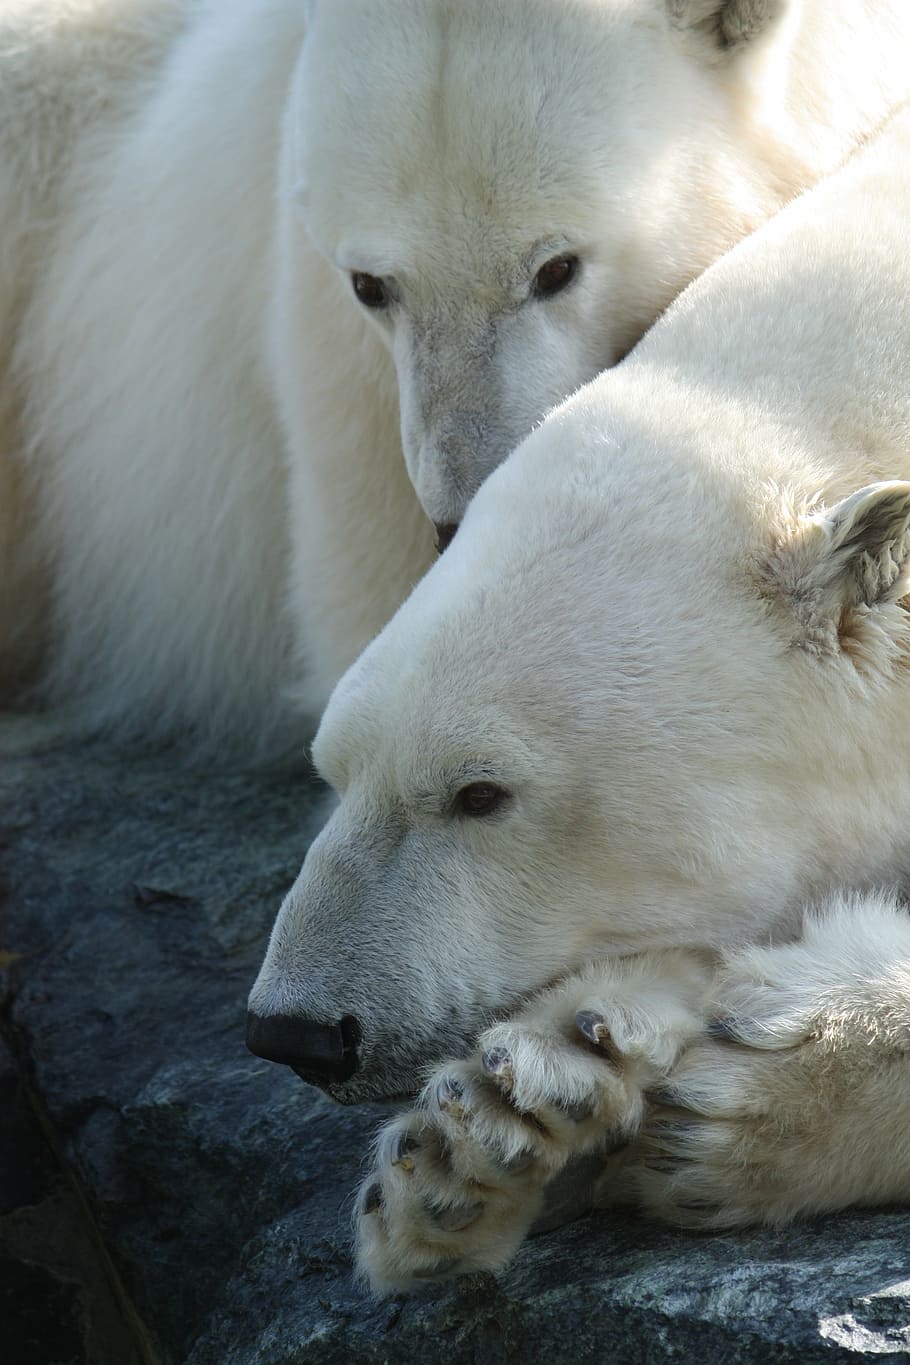 two polar bears, polar bear, stuttgart, zoo, white, animals in the wild, animal wildlife, animal themes, outdoors, day